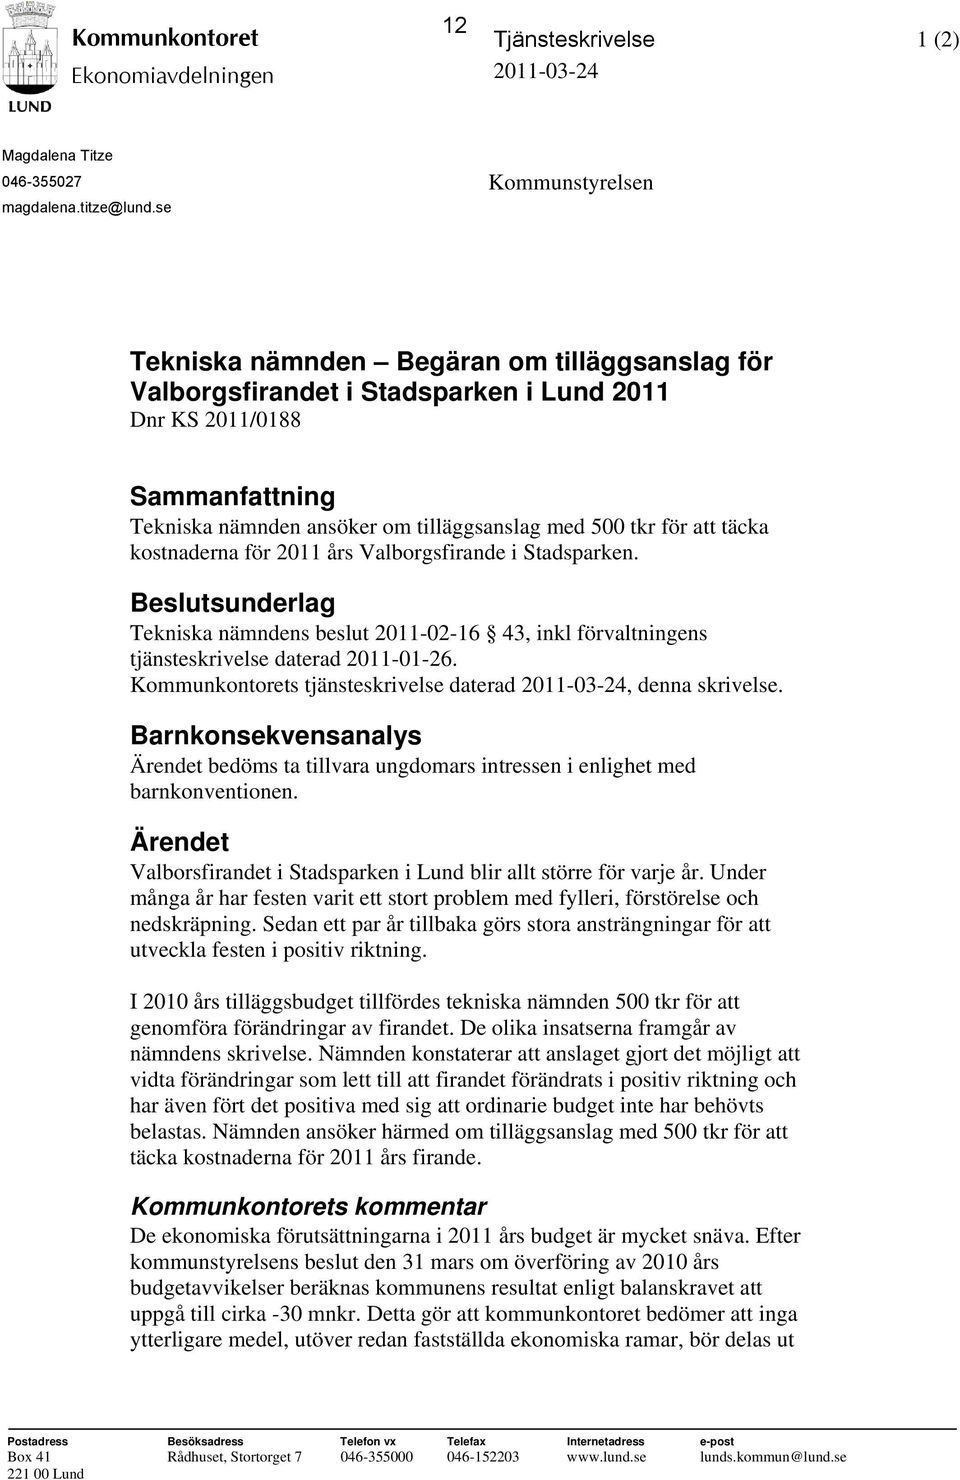 att täcka kostnaderna för 2011 års Valborgsfirande i Stadsparken. Beslutsunderlag Tekniska nämndens beslut 2011-02-16 43, inkl förvaltningens tjänsteskrivelse daterad 2011-01-26.